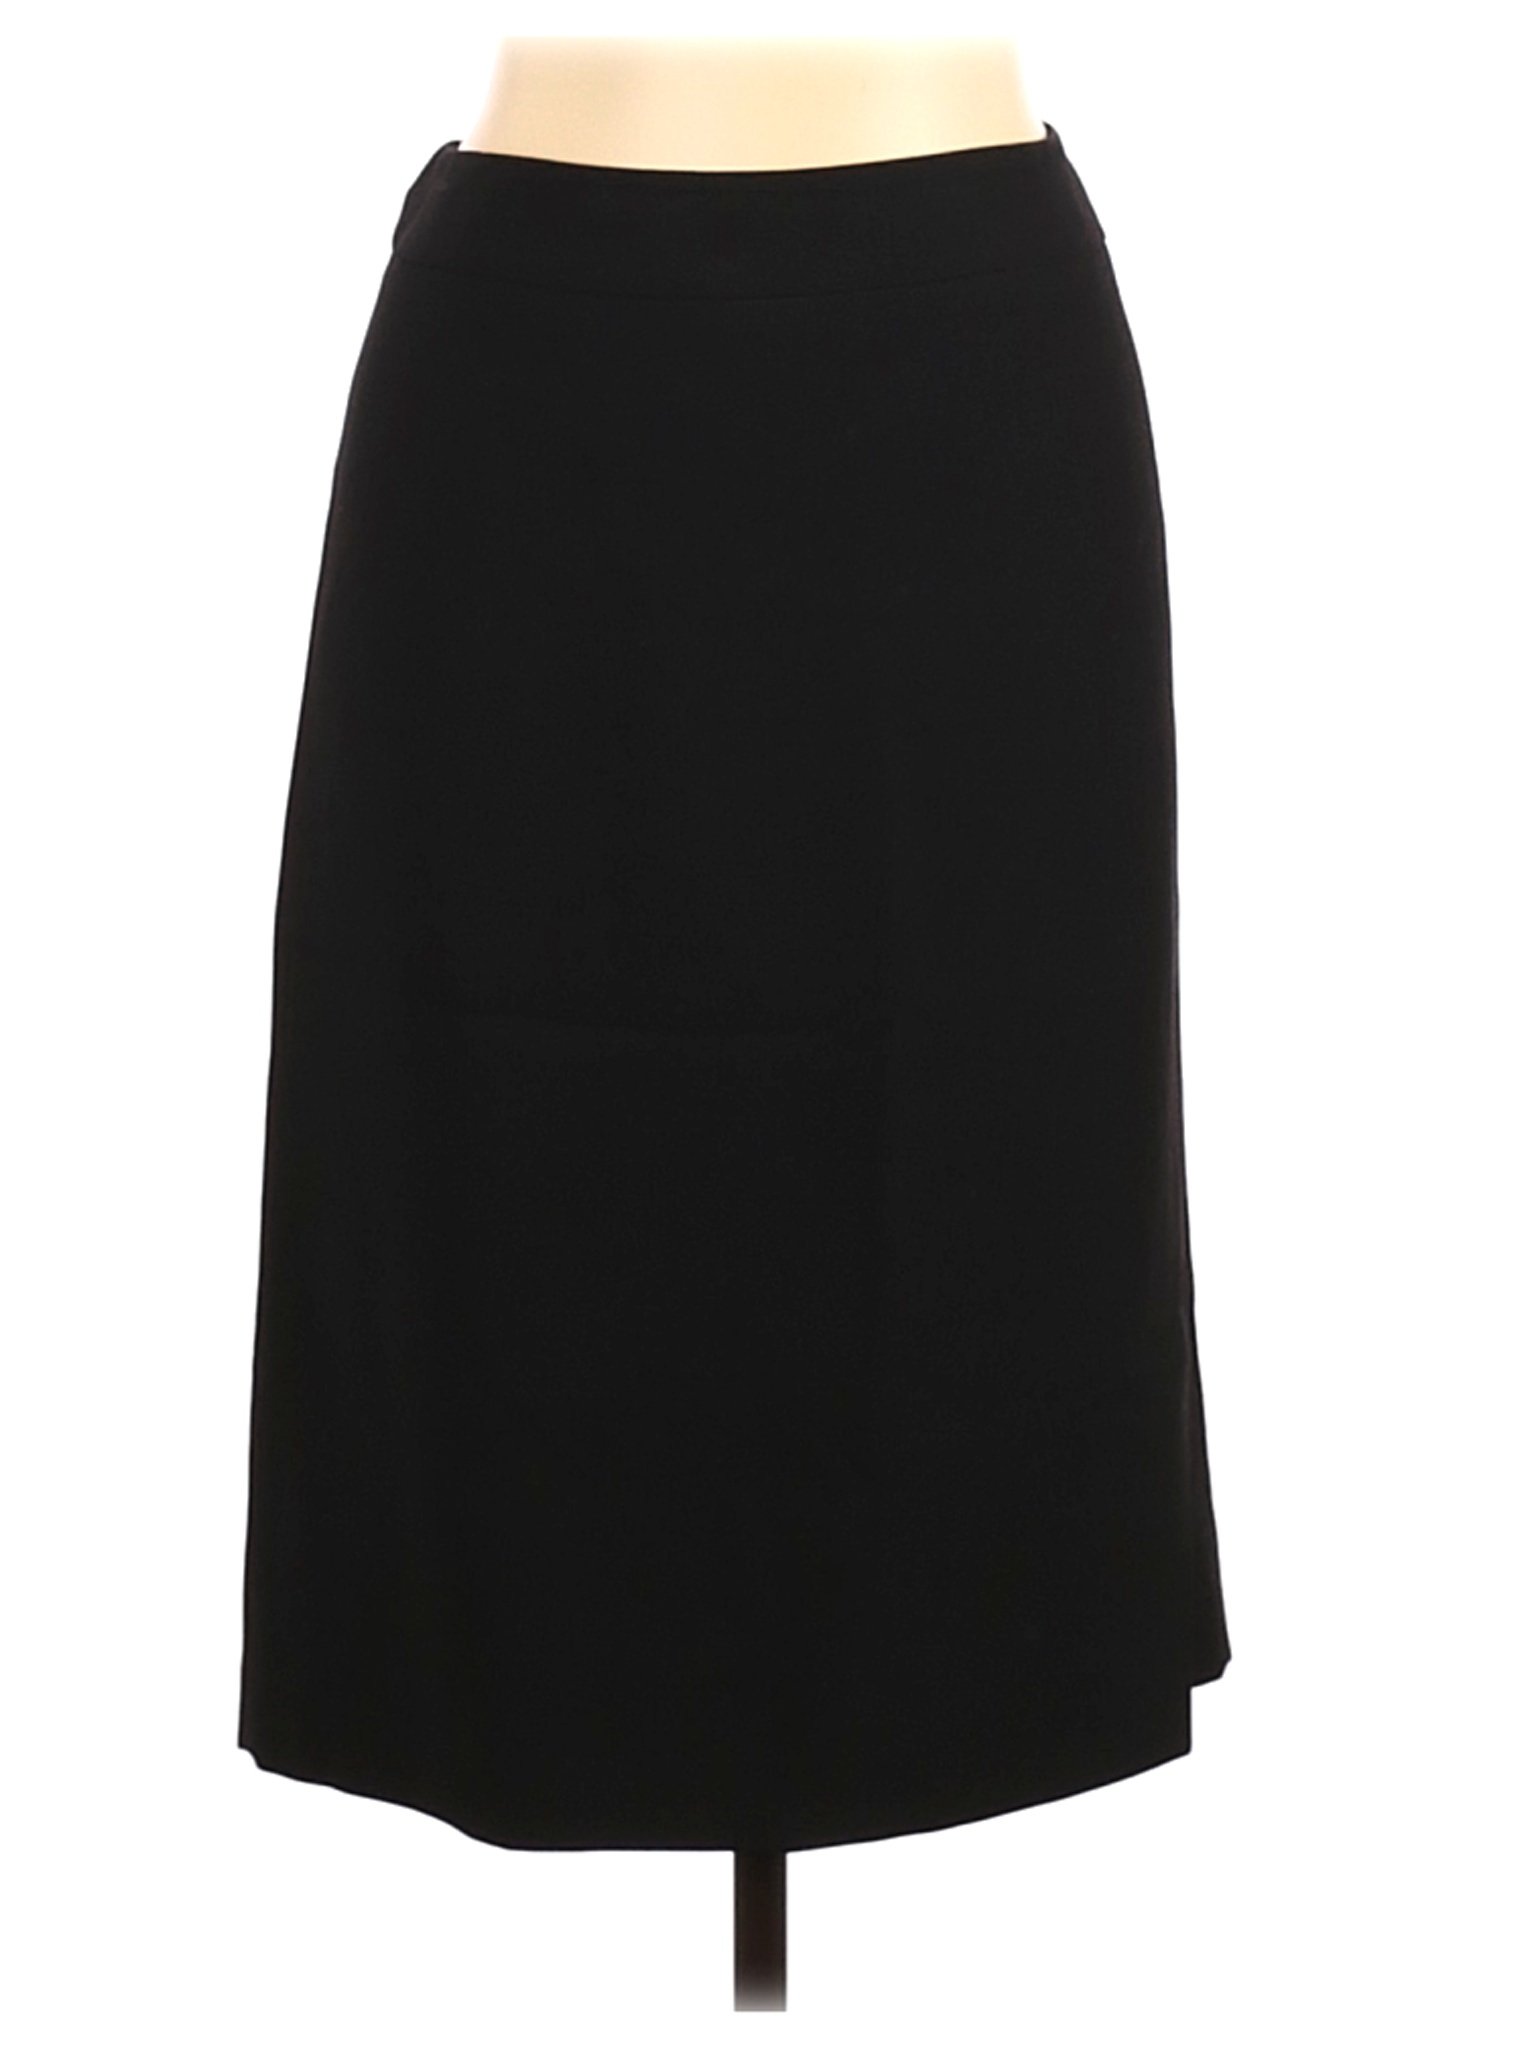 Jones New York Women Black Casual Skirt 14 | eBay